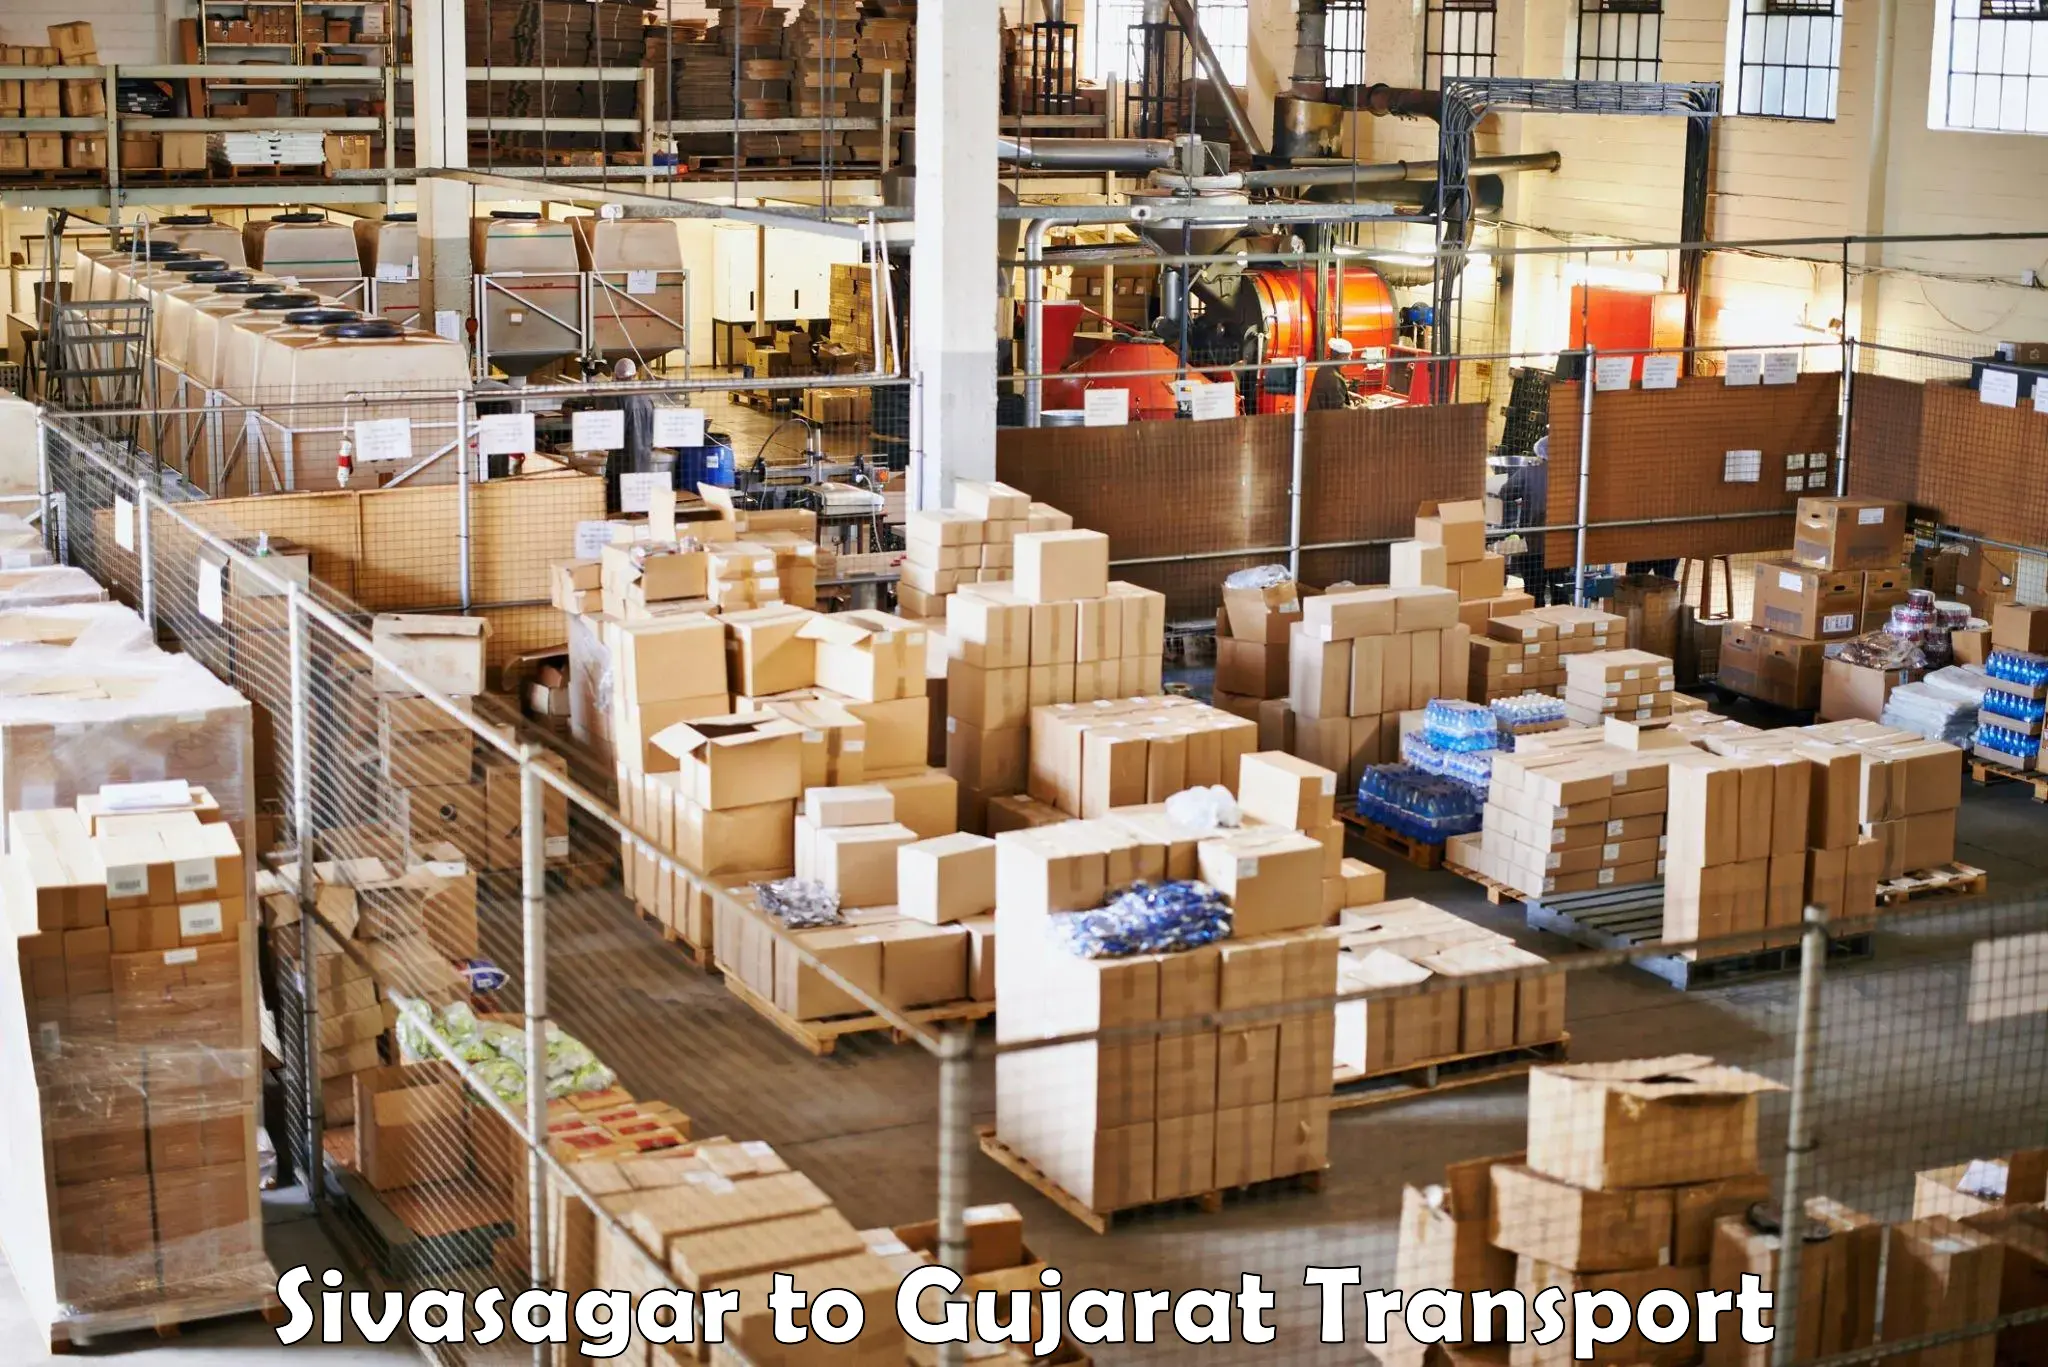 Container transport service Sivasagar to Vadnagar